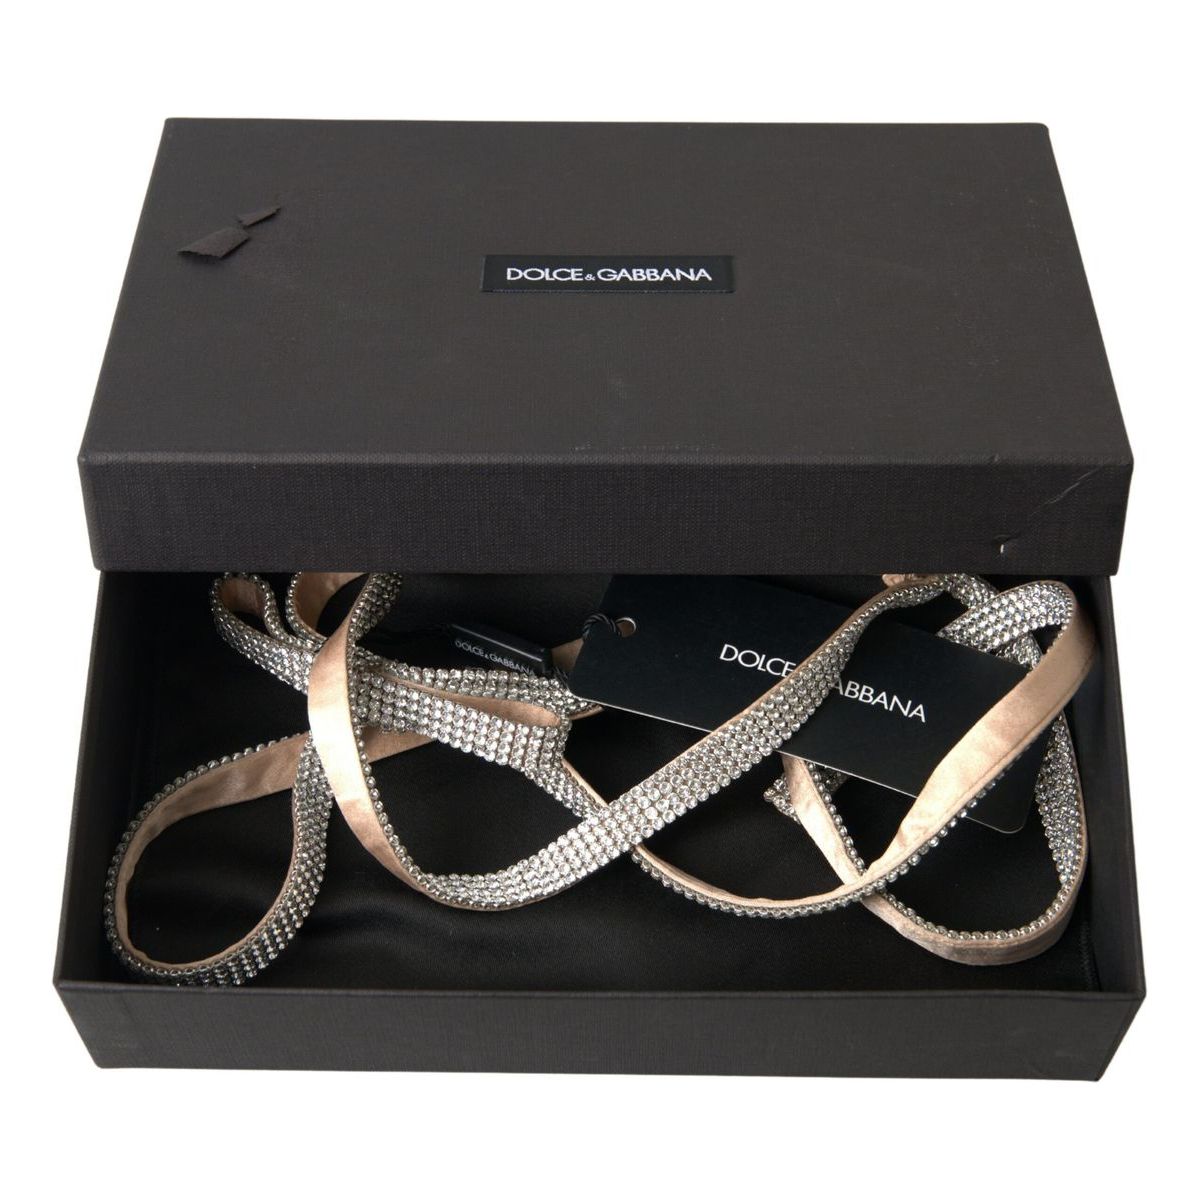 Dolce & Gabbana Elegant Crystal Skinny Silk Bow Belt beige-silk-clear-crystal-bow-waist-belt 465A1628-scaled-60a68ec1-325.jpg